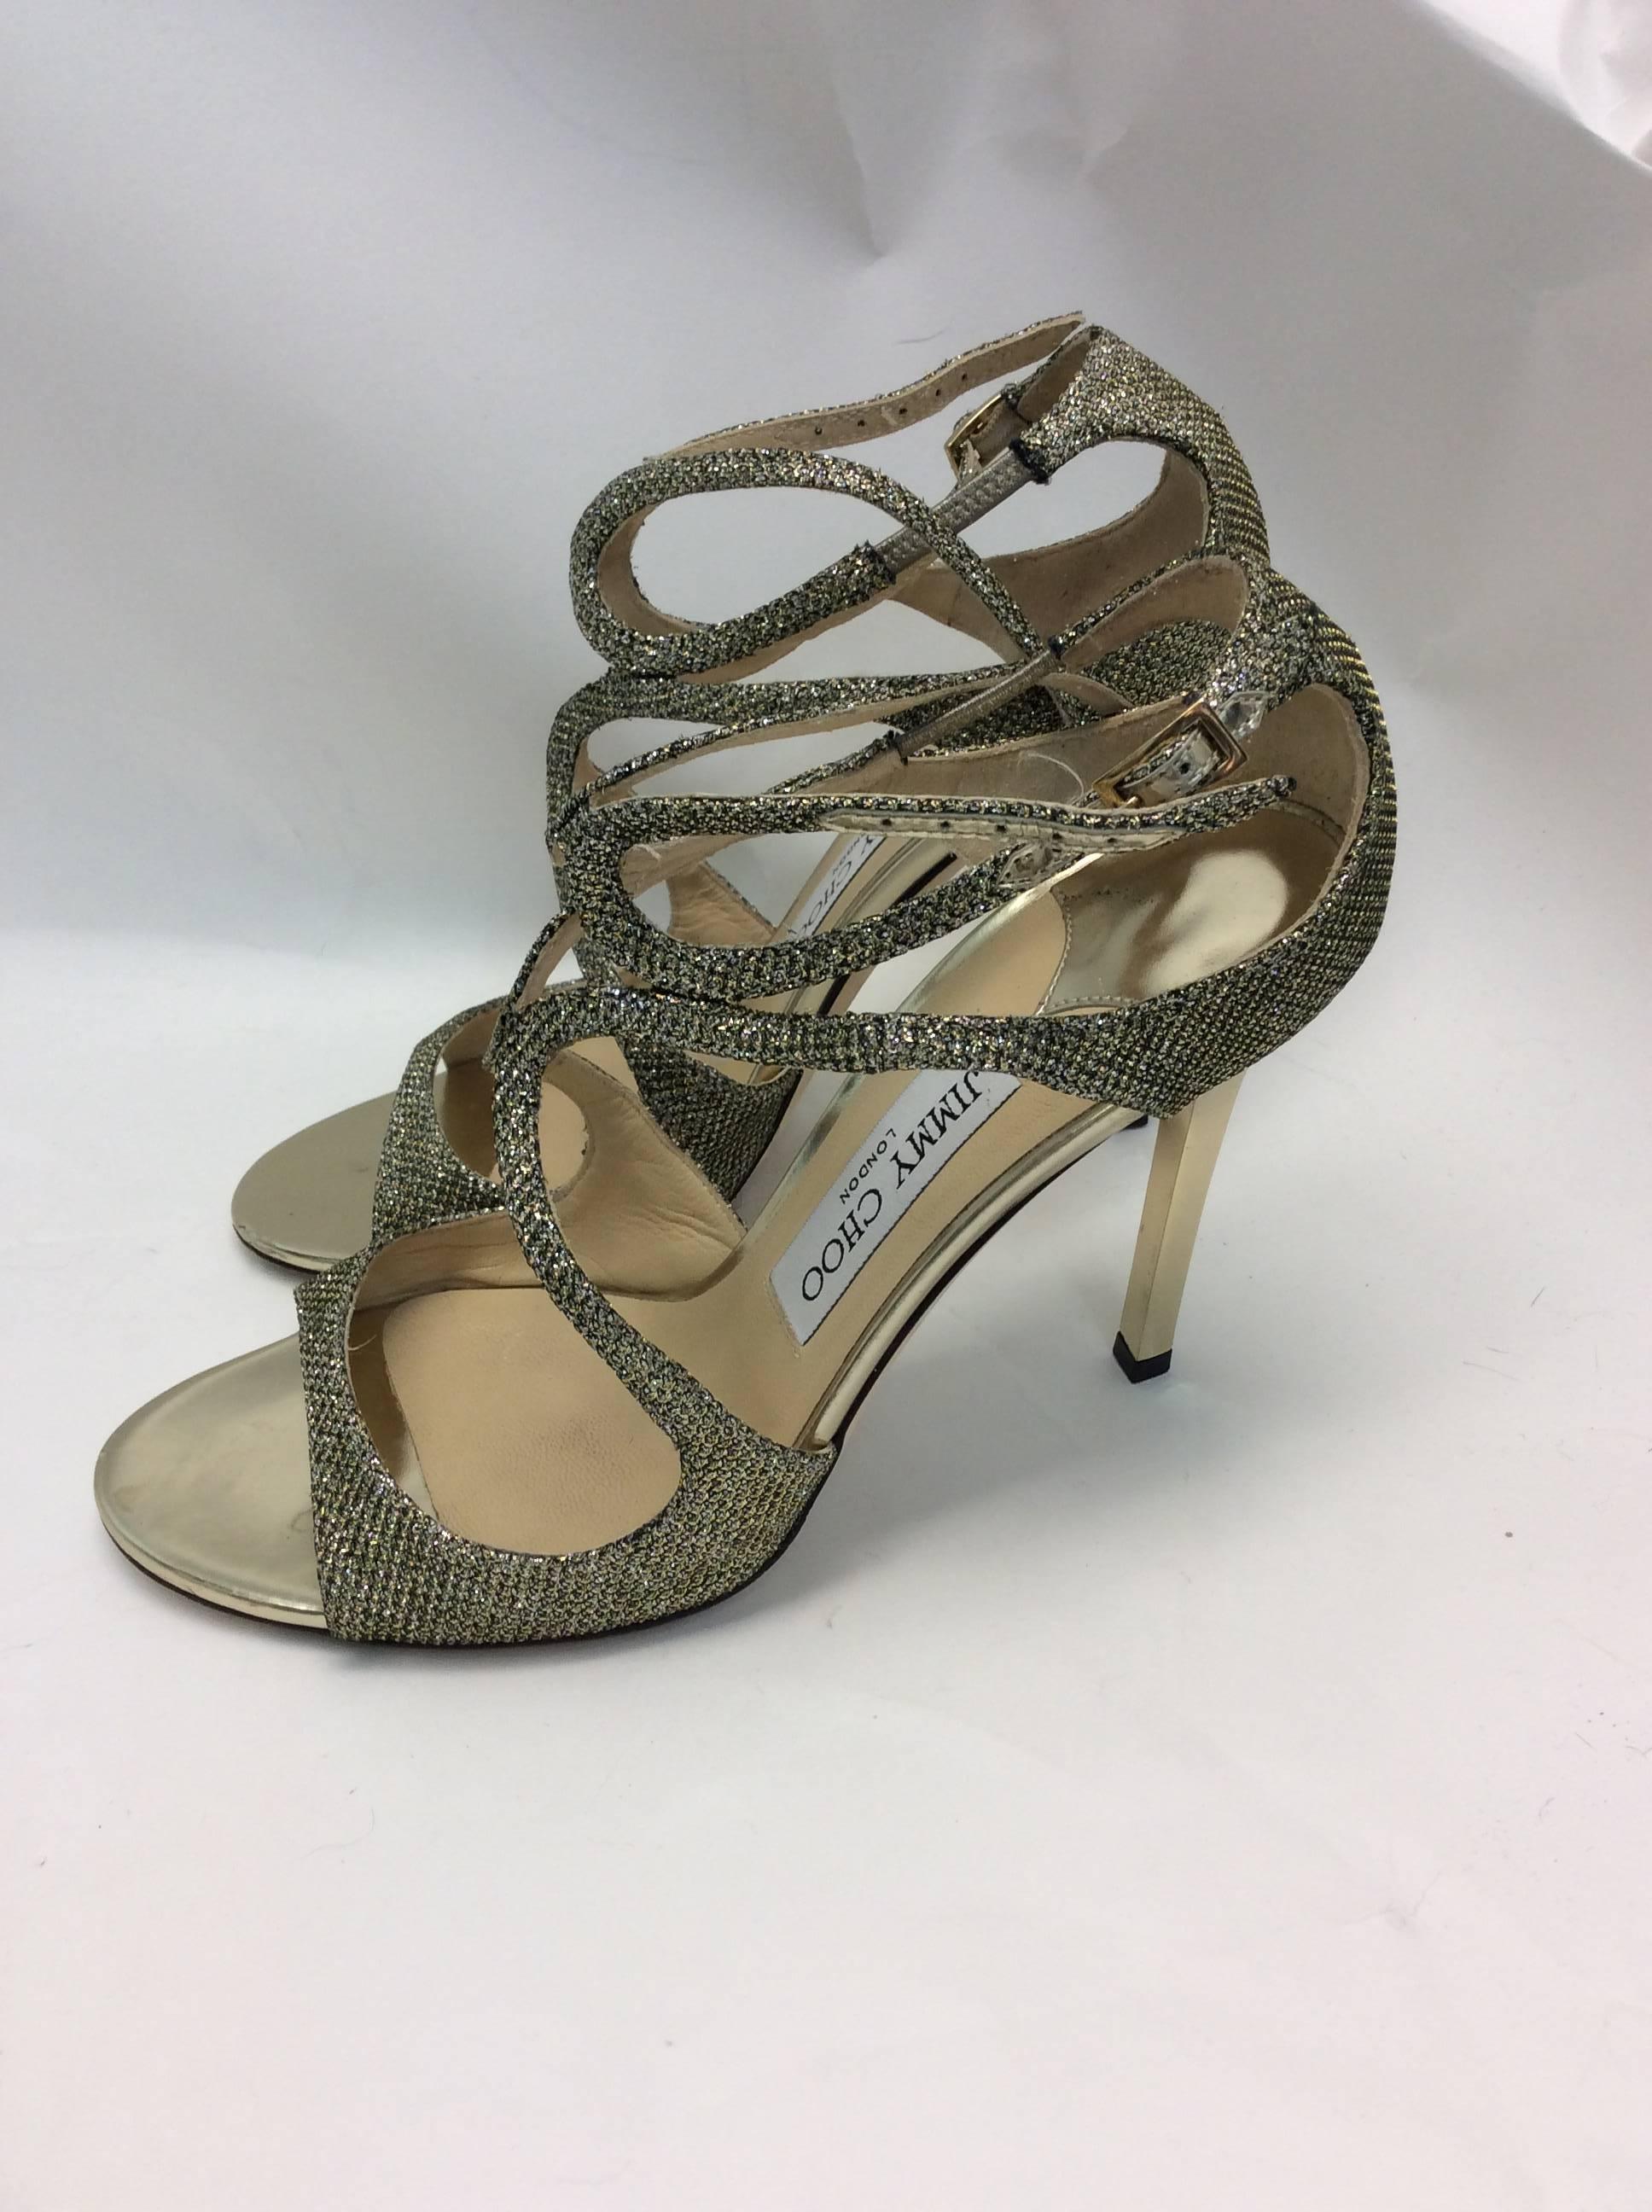 Jimmy Choo Glitter Strappy Heels
4 inch heel
Ankle buckle straps 
$499
size 37.5